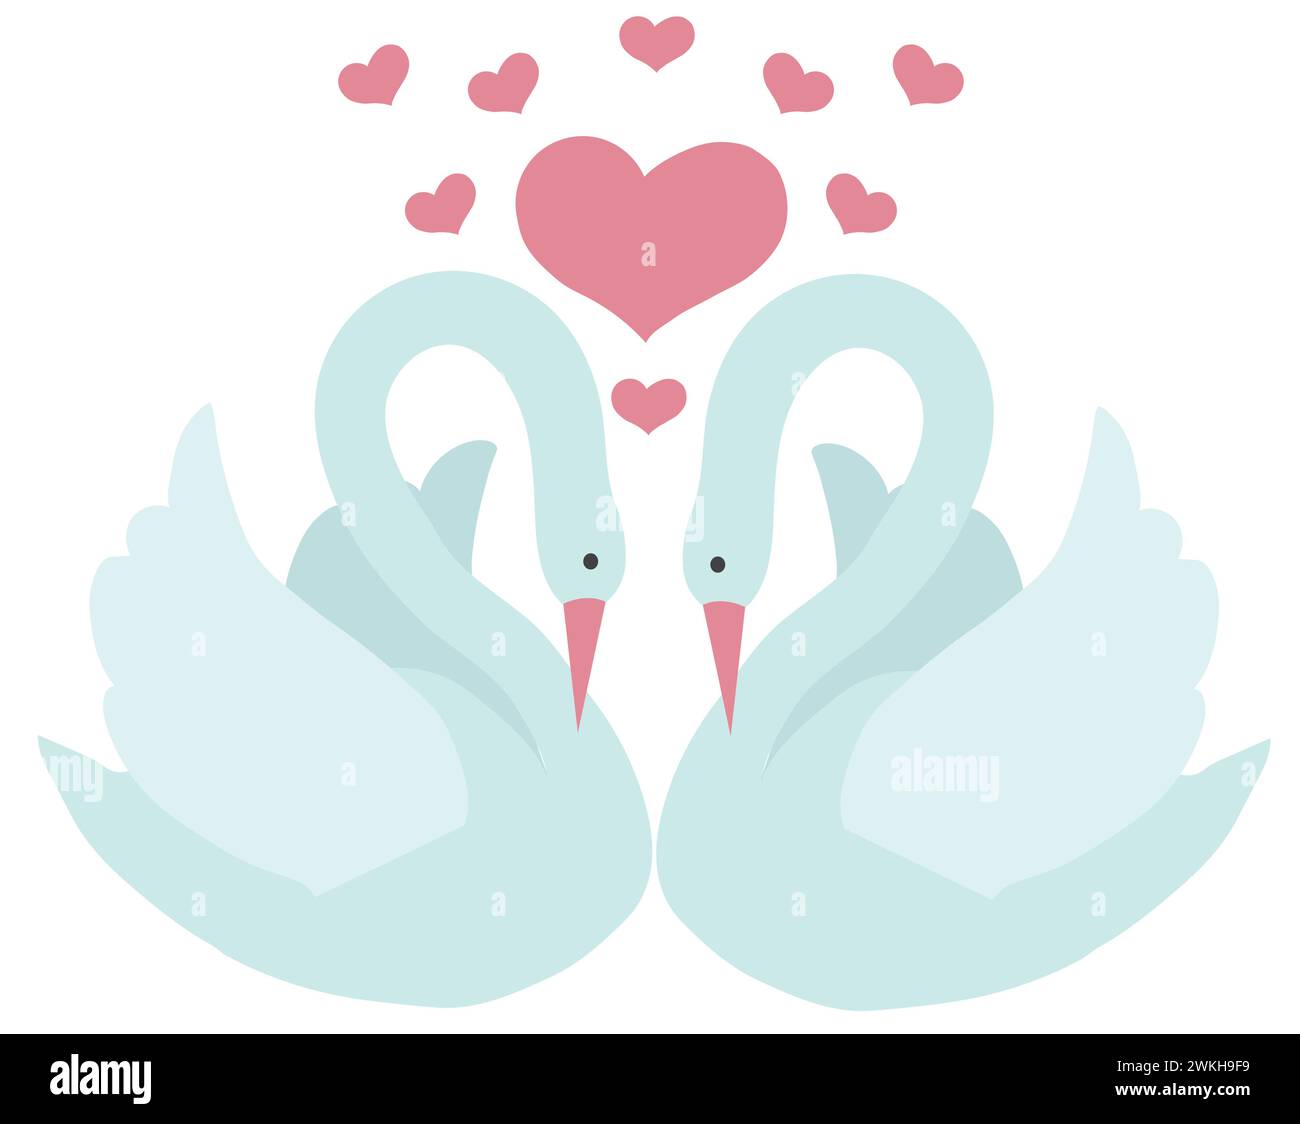 Une paire de cygnes blancs et de coeurs roses venant d'eux. Style dessin animé. Illustration vectorielle isolée sur fond blanc. Illustration de Vecteur